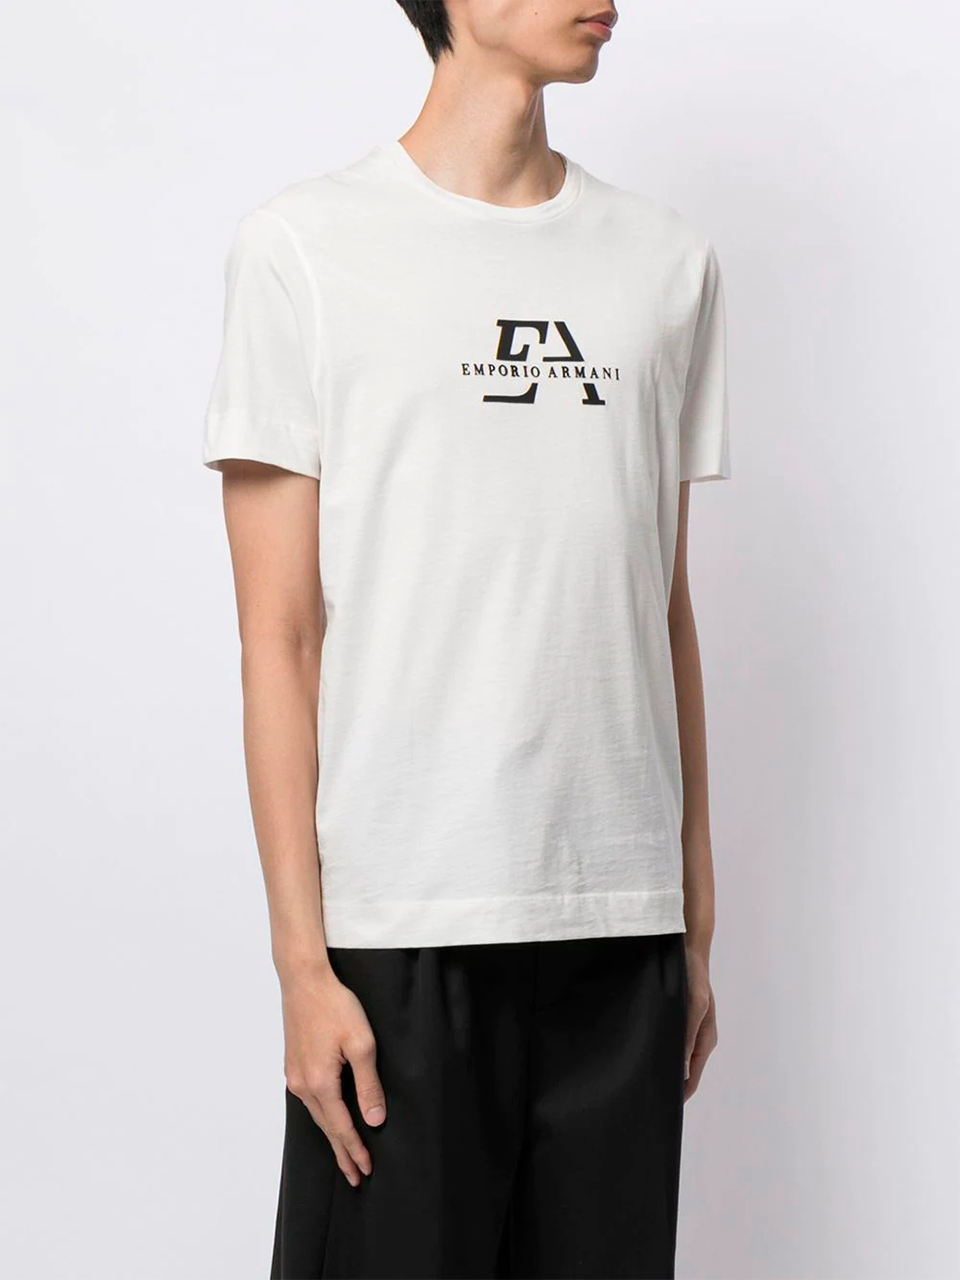 Imagem de: Camiseta Emporio Armani Branca com Estampa Monograma